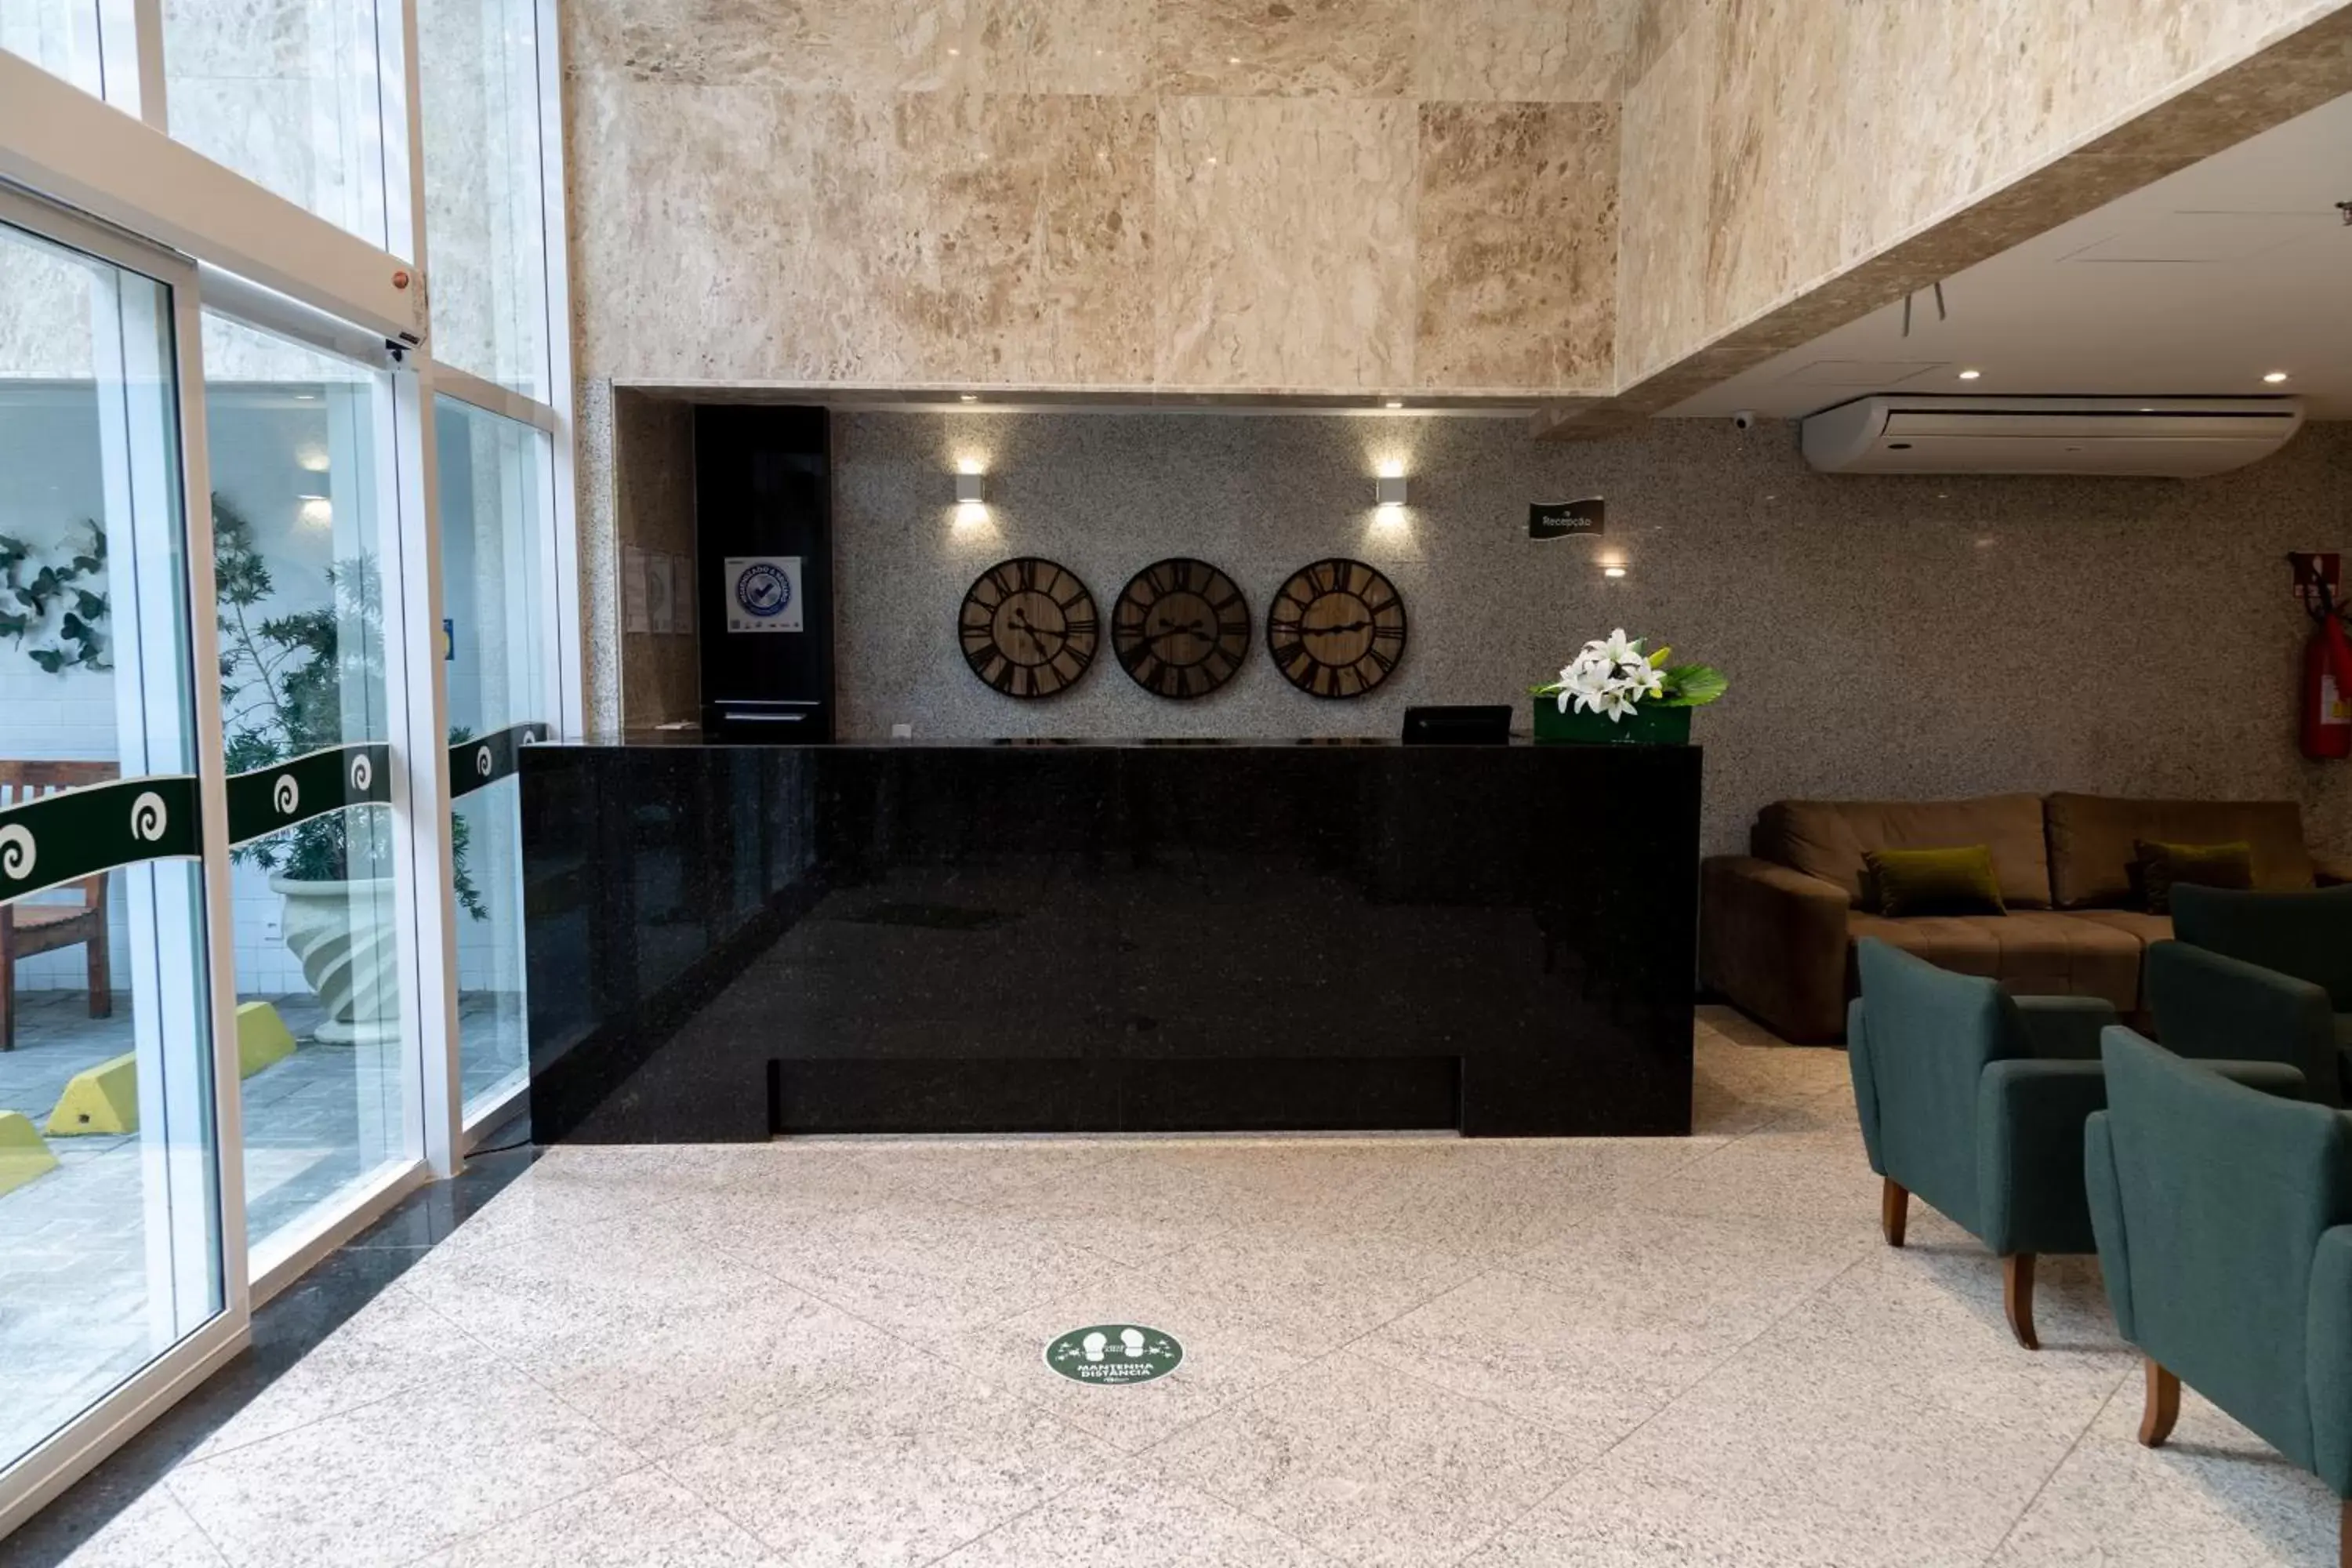 Lobby or reception, Lobby/Reception in Aquidabã Praia Hotel